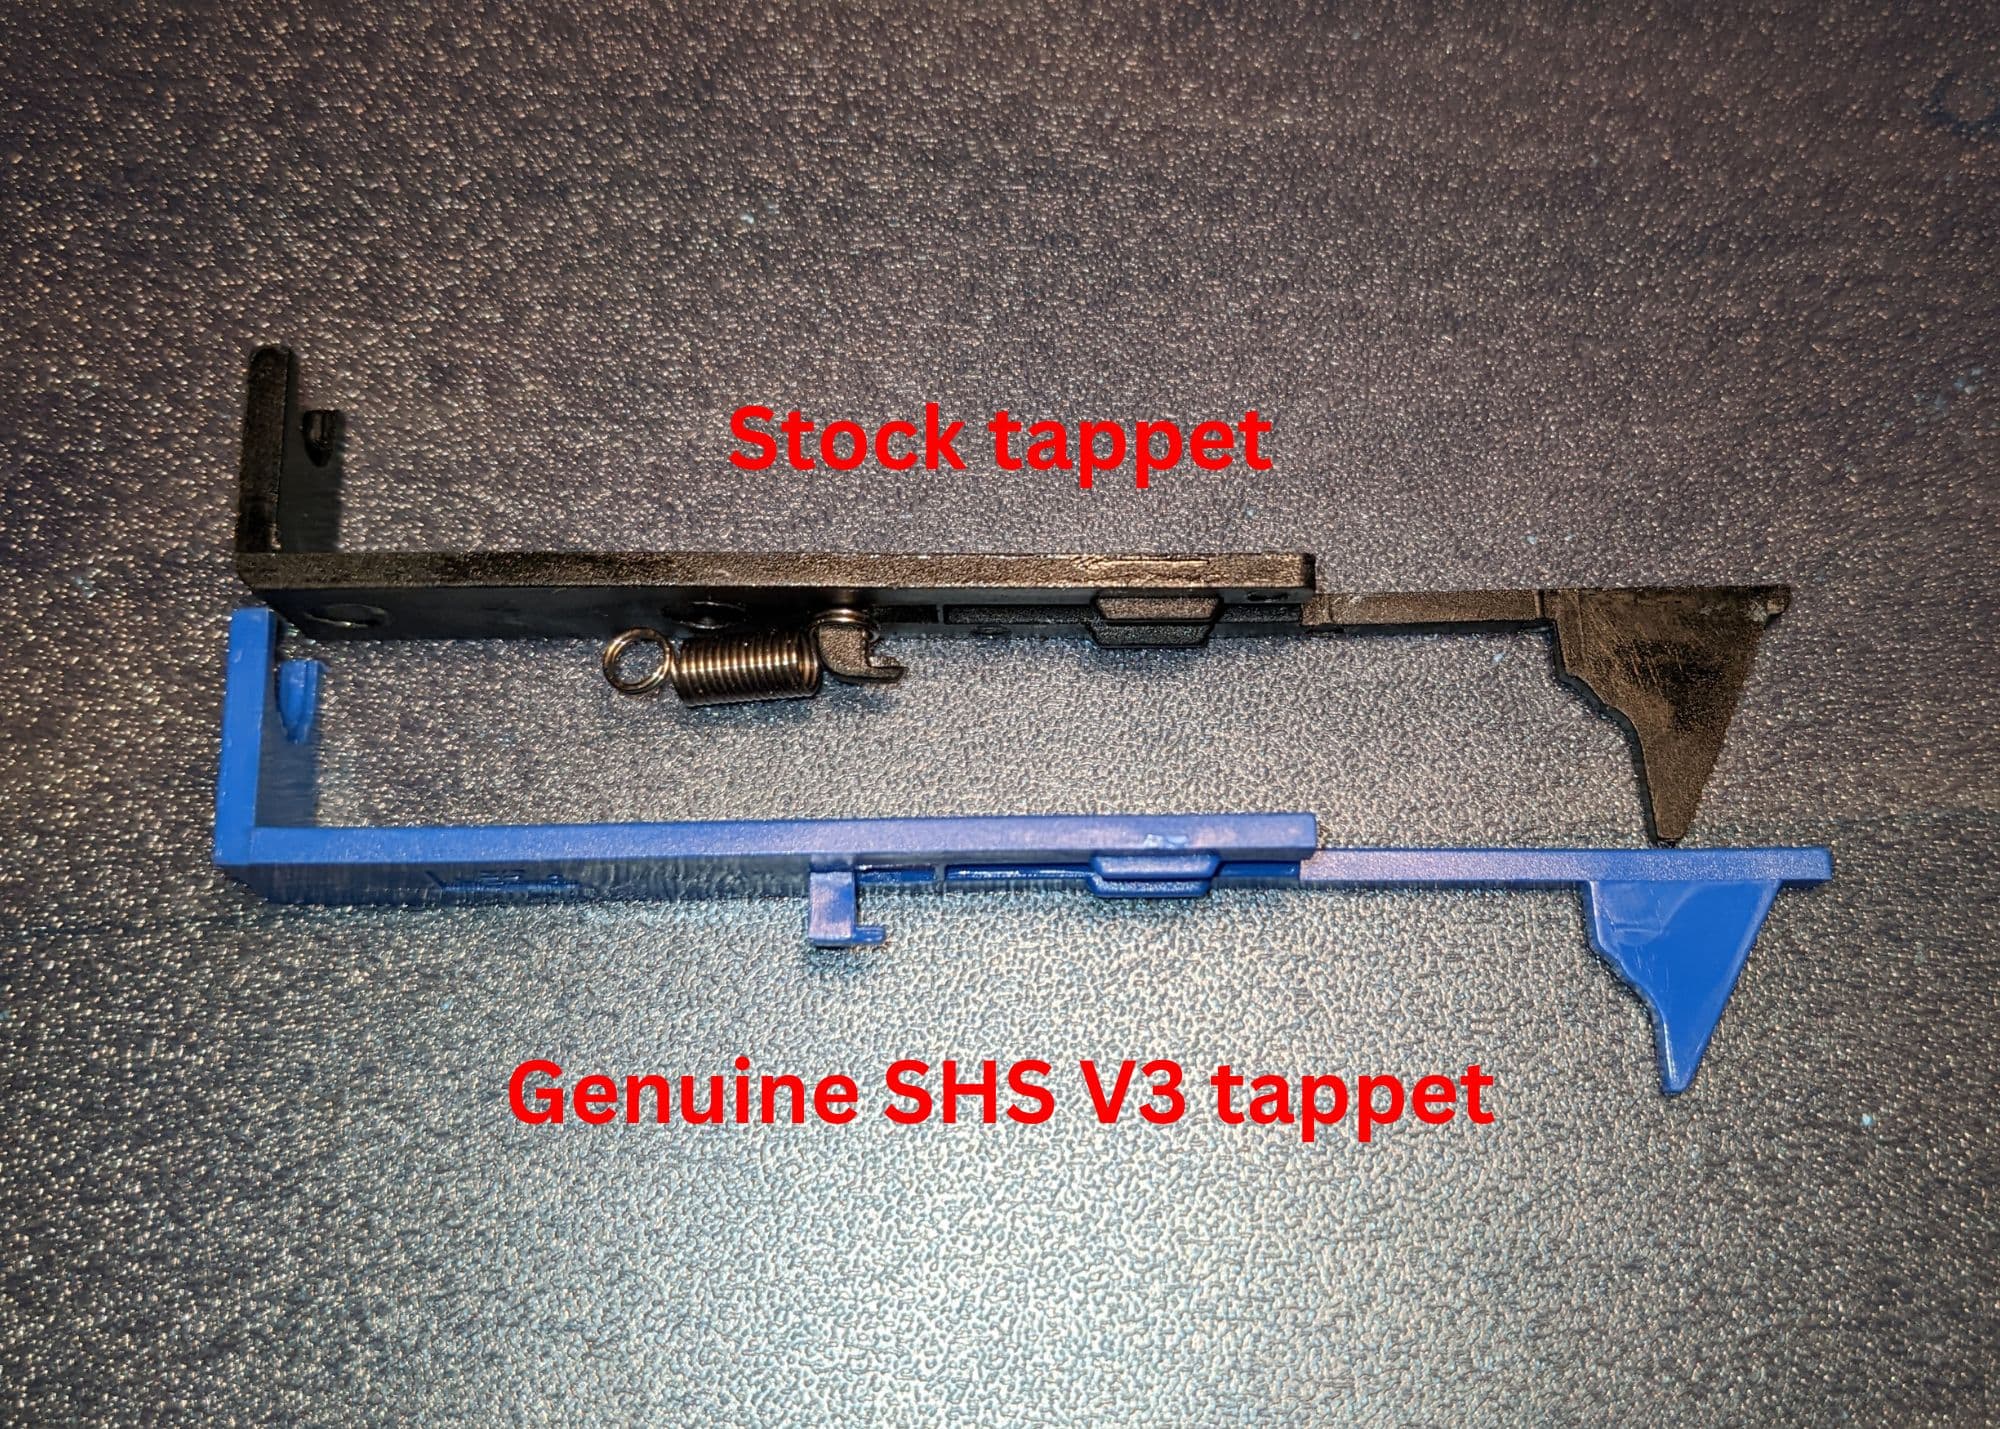 Stock vs SHS tappet